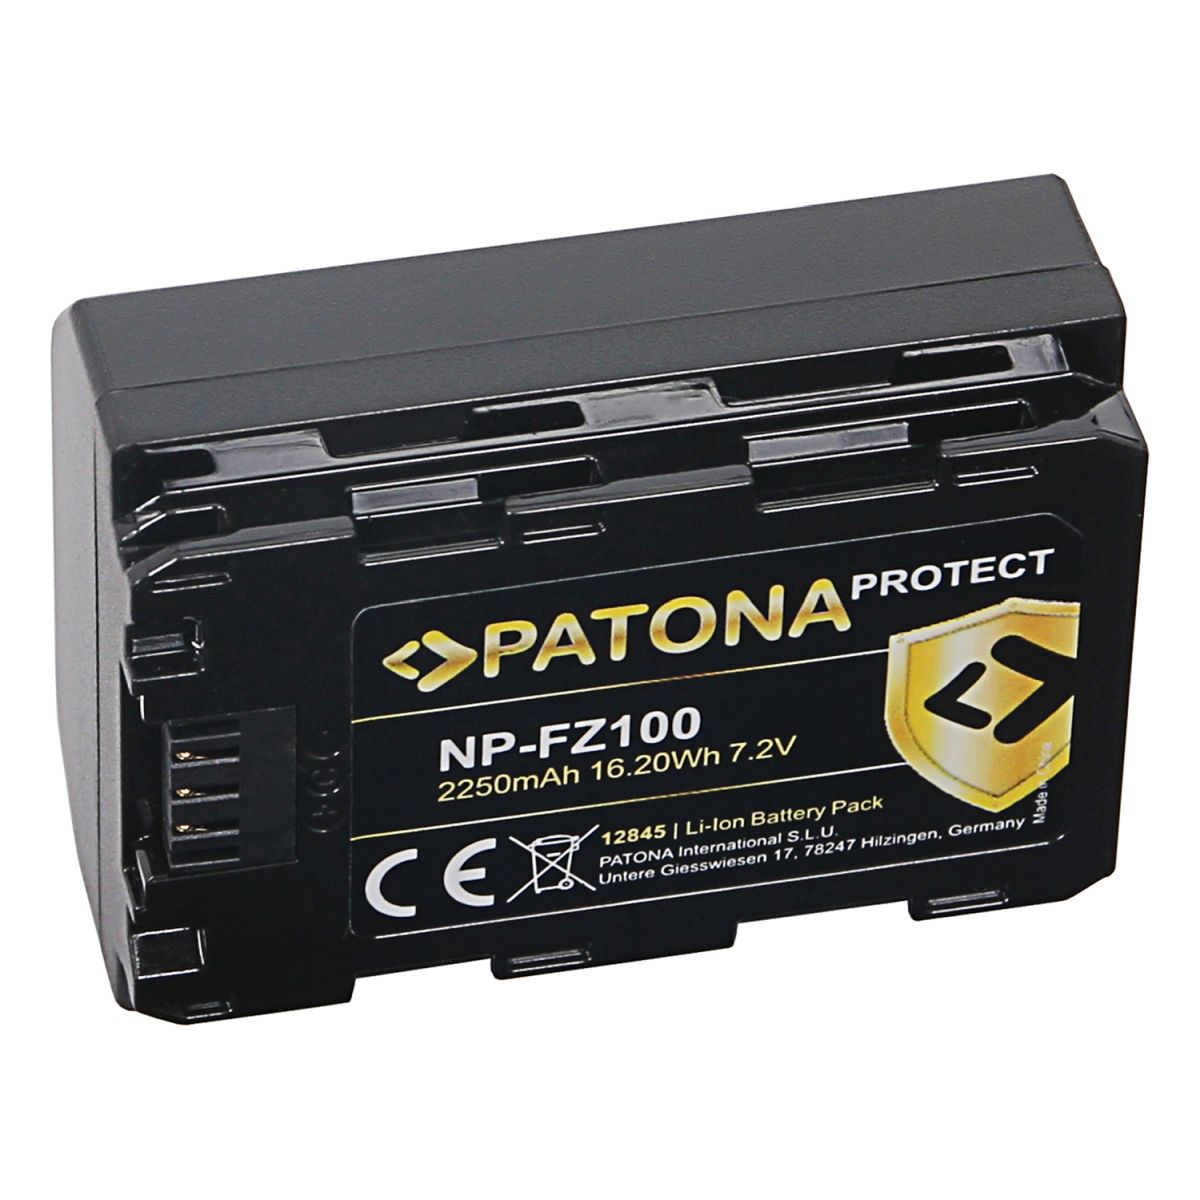 Patona Protect Akku Sony NP-FZ 100